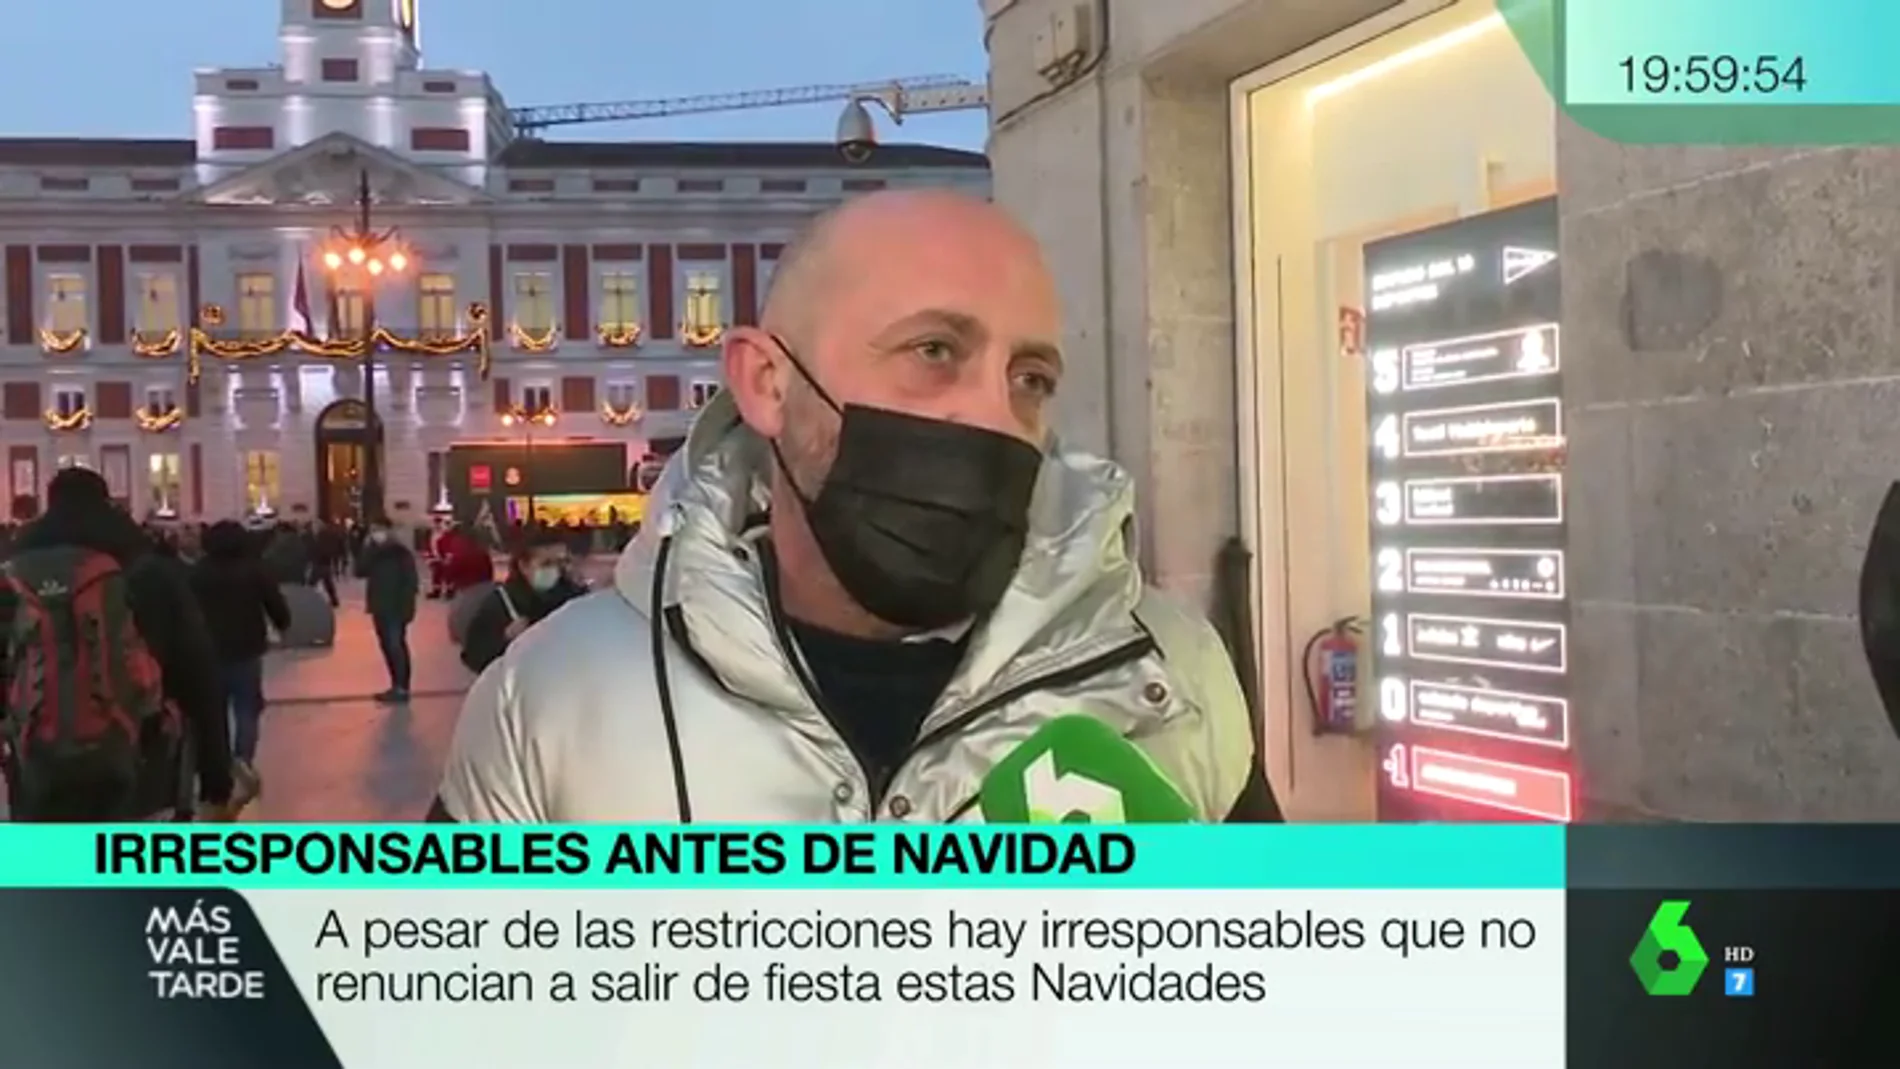 "Vamos a celebrar la Navidad con 40 personas en un piso": la impactante confesión de un hombre en Madrid